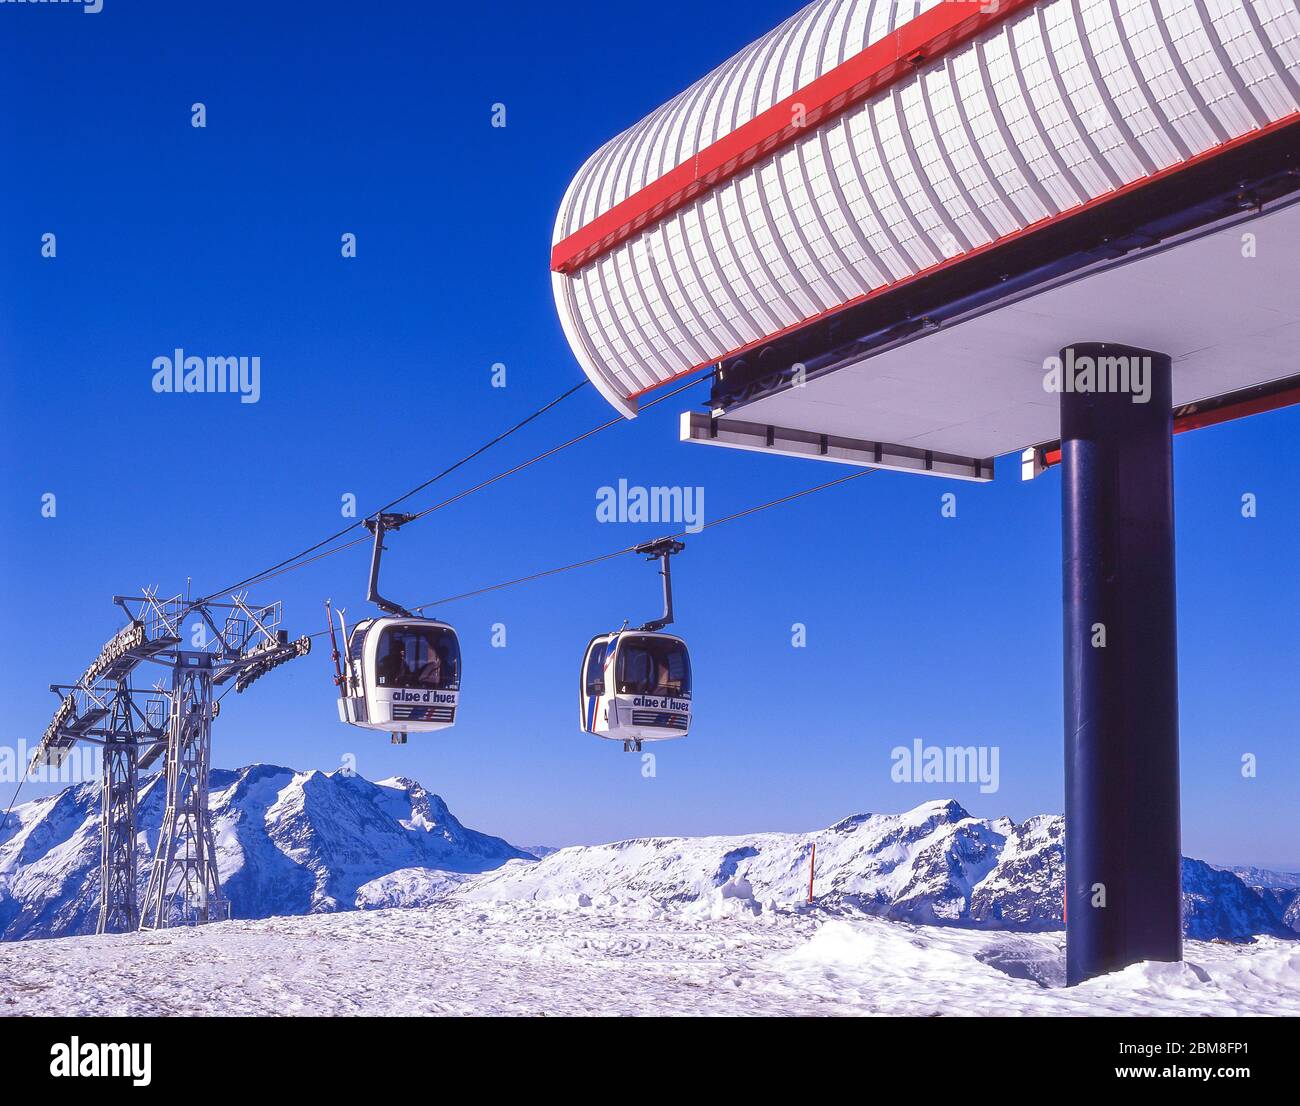 Ski lifts (les oeufs), Alpe d'Huez, Isere, Auvergne-Rhone-Alpes, France Stock Photo